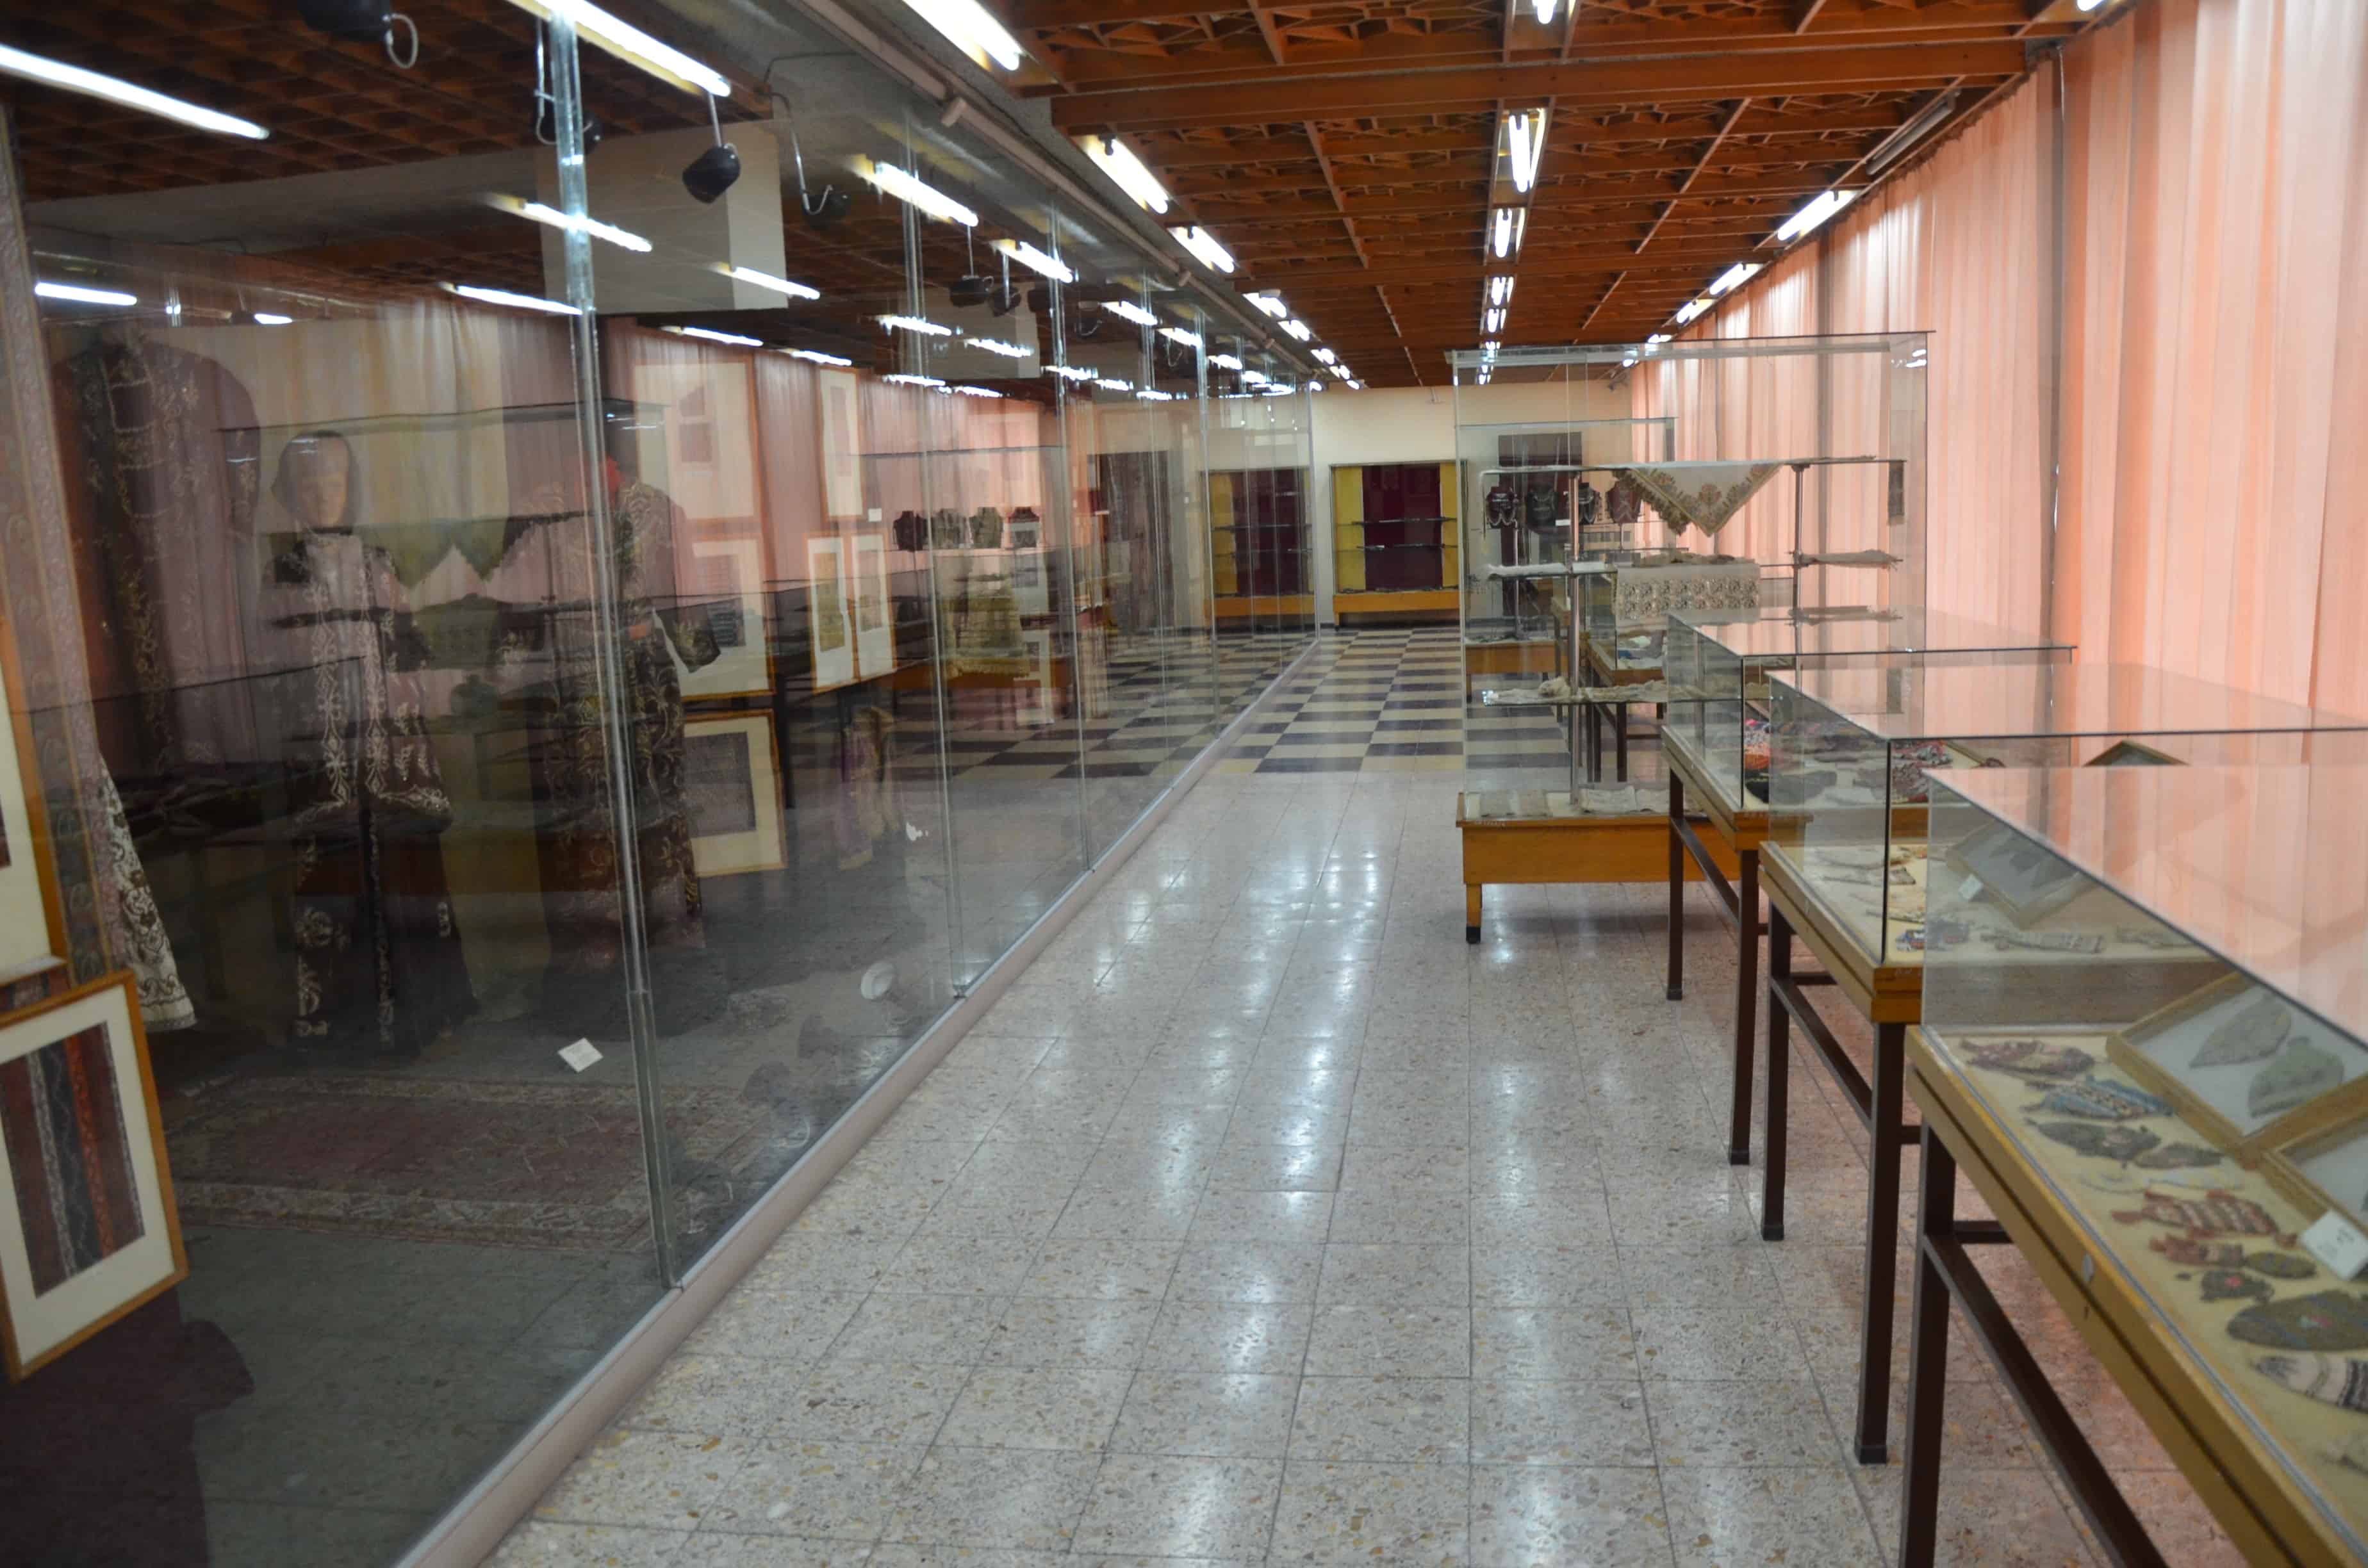 Konya Etnoğrafya Müzesi in Konya, Turkey